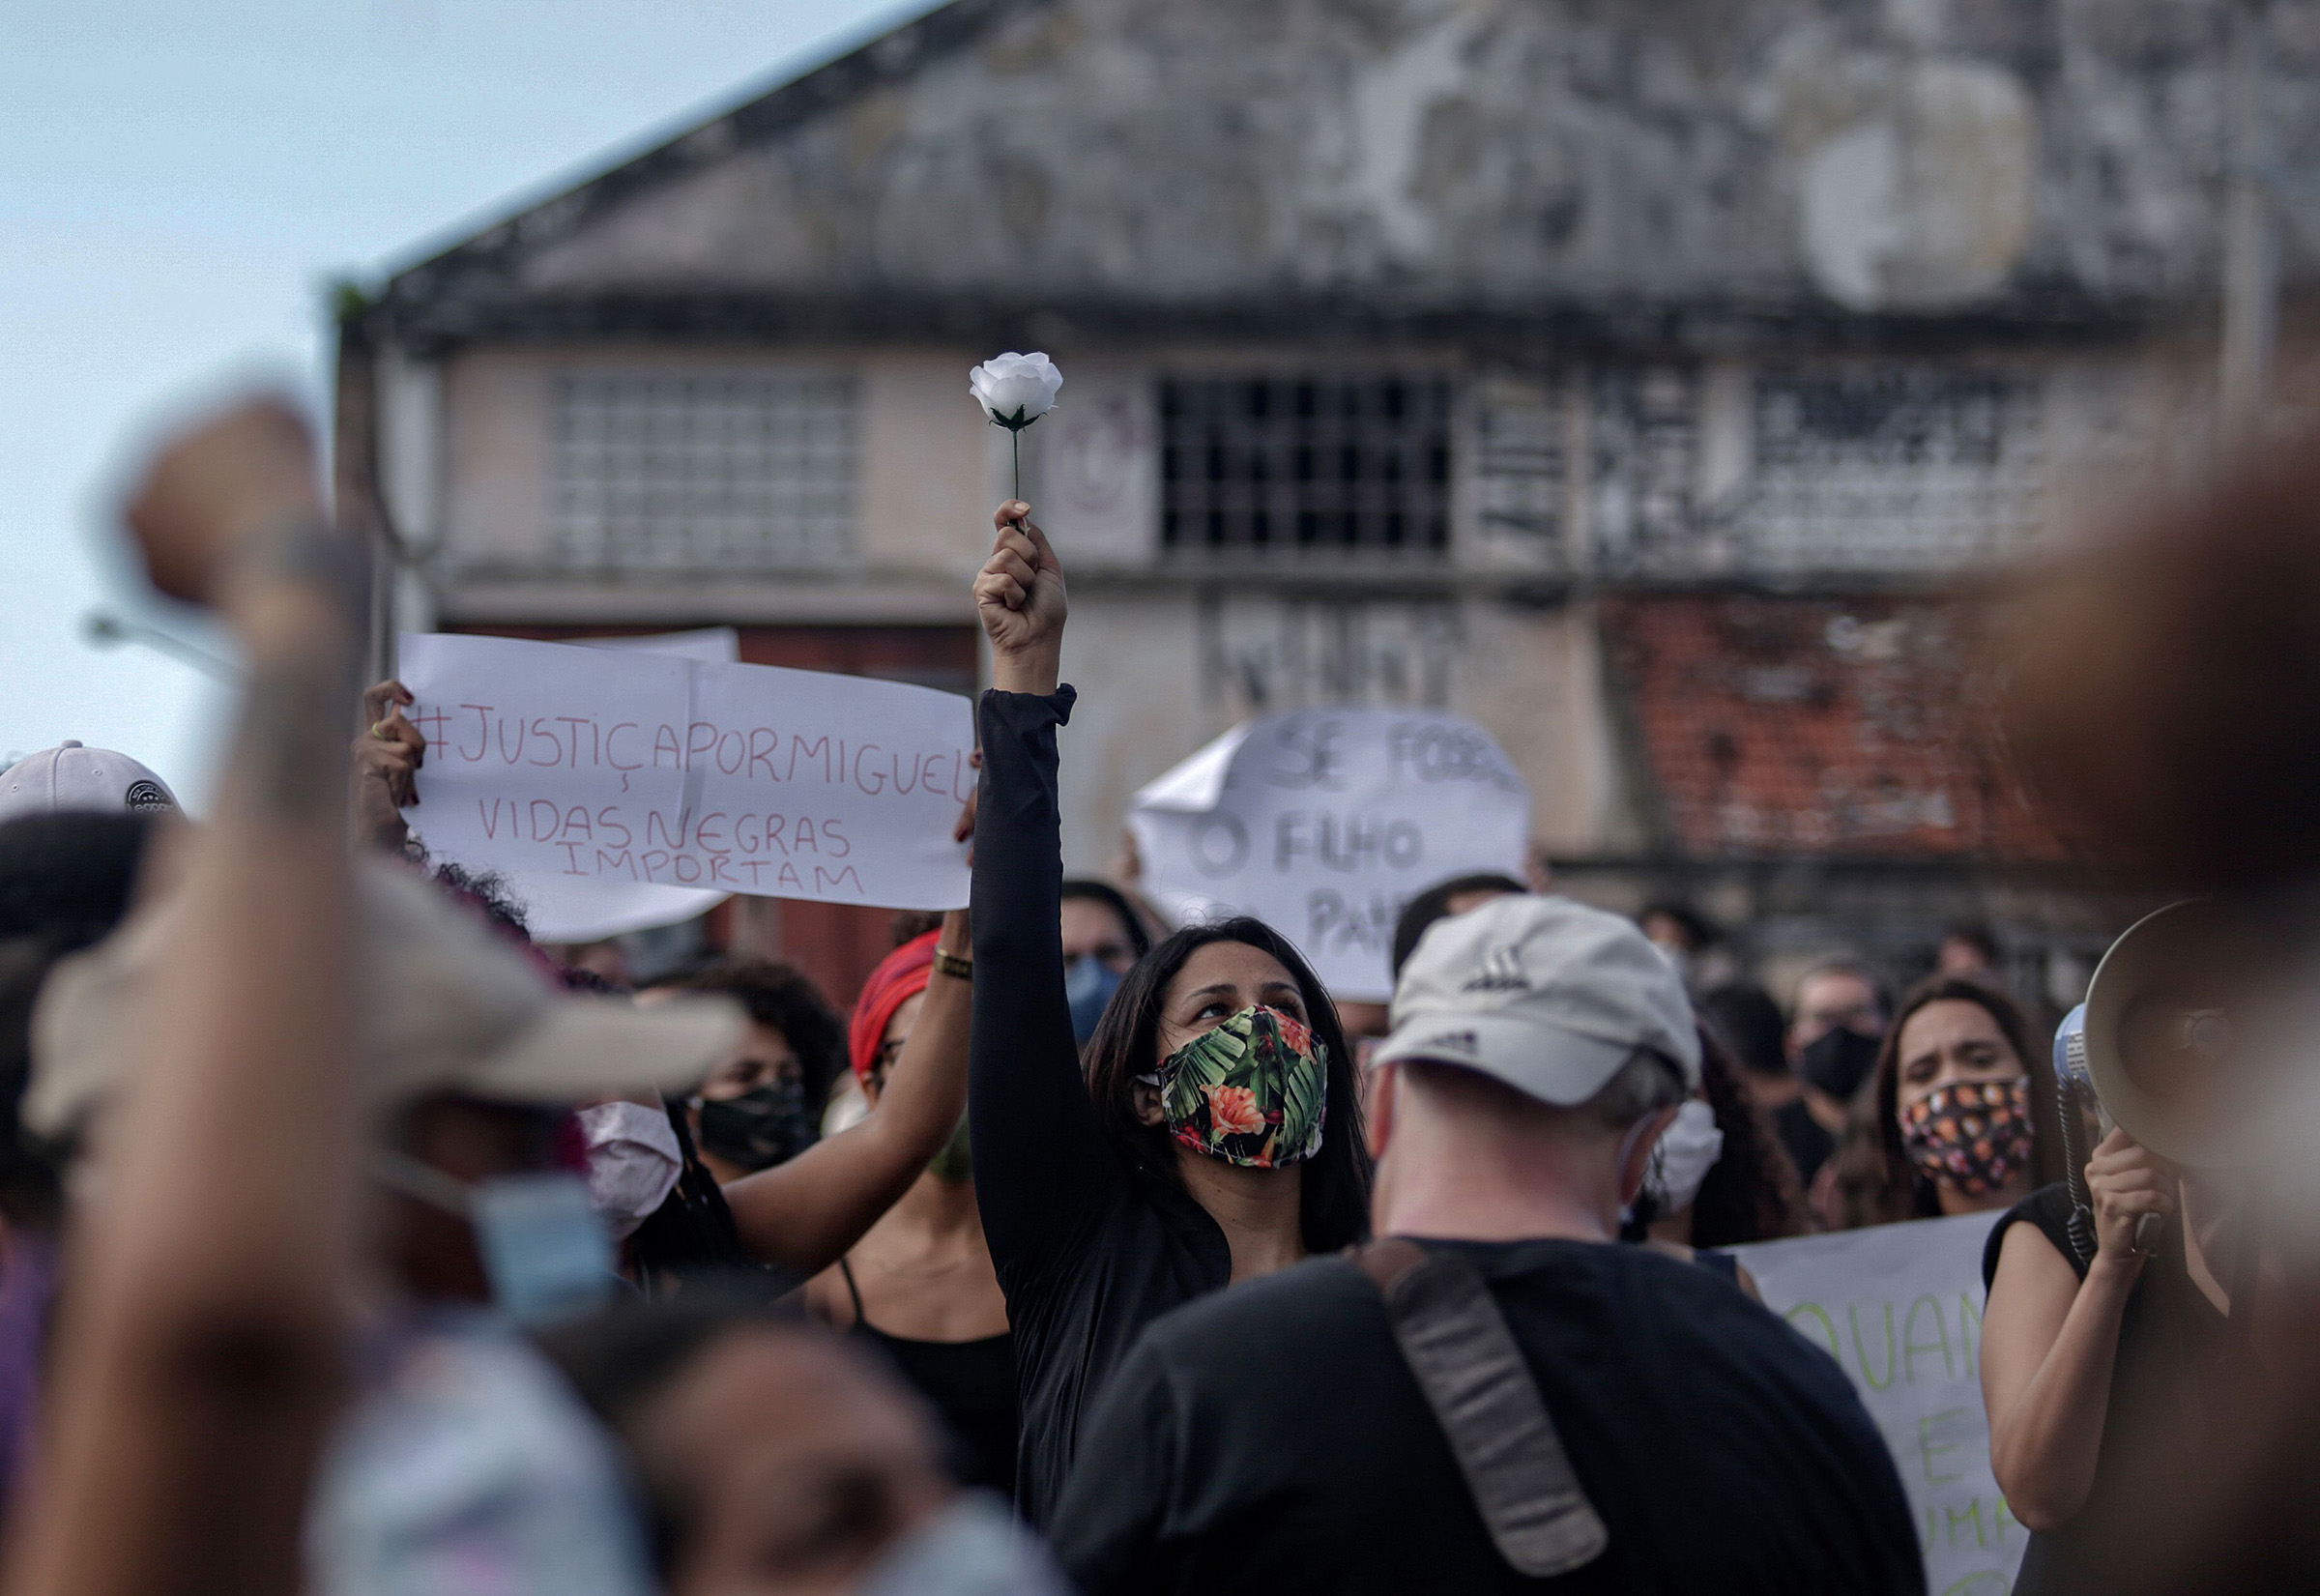 La gente se manifiesta y exige justicia por la muerte de Miguel Otavio Santana da Silva, de cinco años, el 5 de junio de 2020 en Recife, estado de Pernambuco, noreste de Brasil.